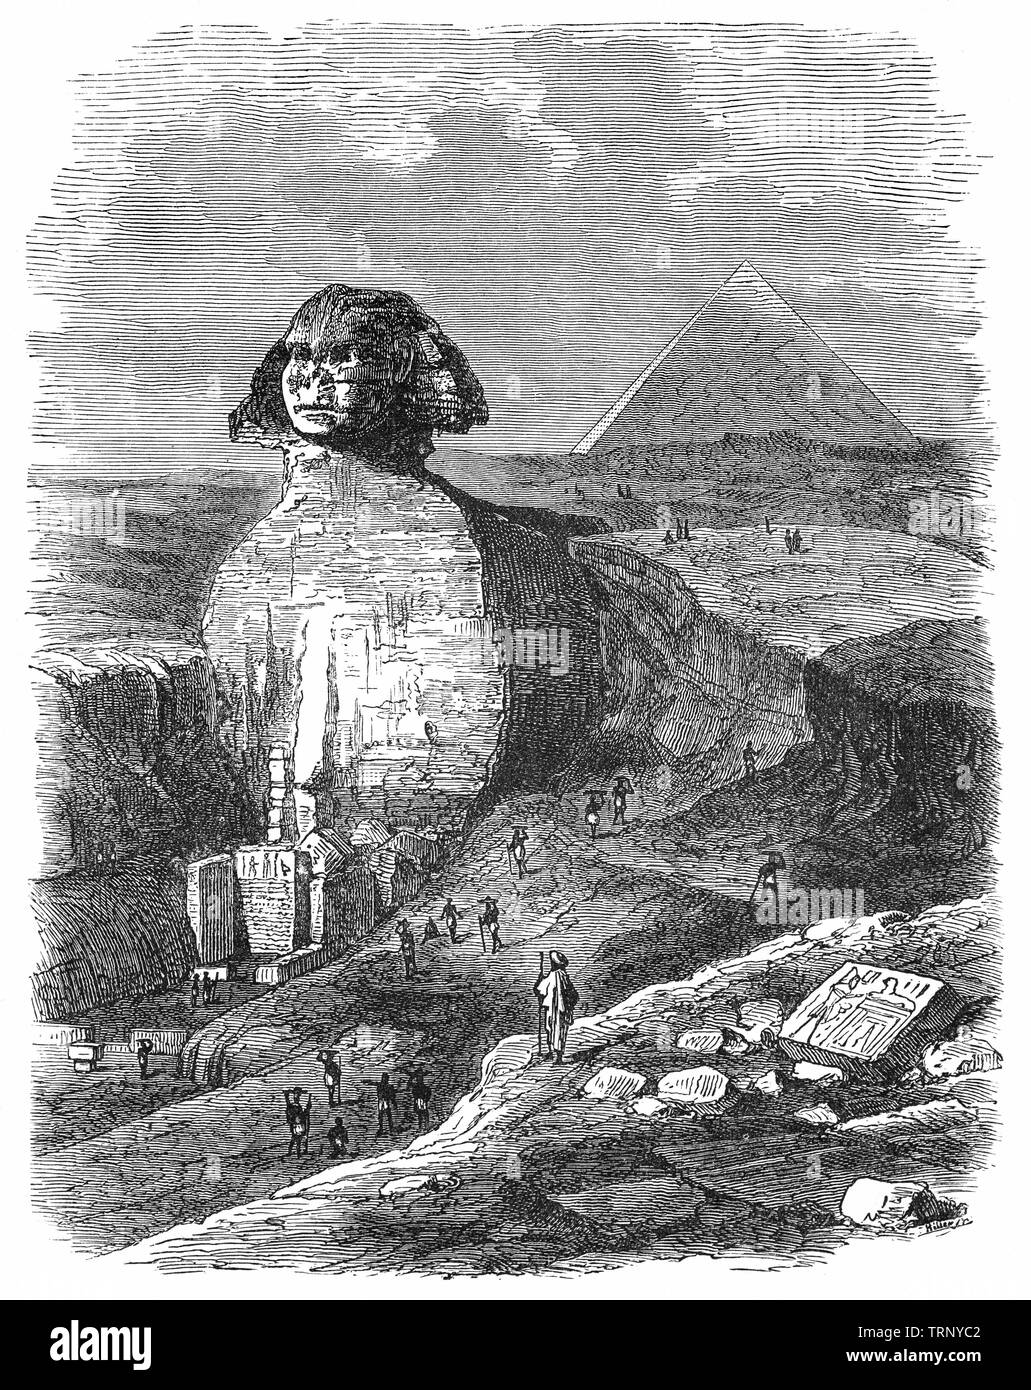 Le grand Sphinx de Gizeh, littéralement la terrifiante l'un au milieu de pyramides égyptiennes est une statue en pierre calcaire d'un sphinx, une créature mythique avec le corps d'un lion et la tête d'un humain.donnant directement de l'Ouest à l'Est, il se dresse sur le plateau de Gizeh, sur la rive ouest du Nil à Gizeh, Egypte. Le Sphinx est la plus ancienne sculpture monumentale en Égypte et est communément admis d'avoir été construit par les égyptiens de l'Ancien Empire, sous le règne du Pharaon Khafré. Banque D'Images